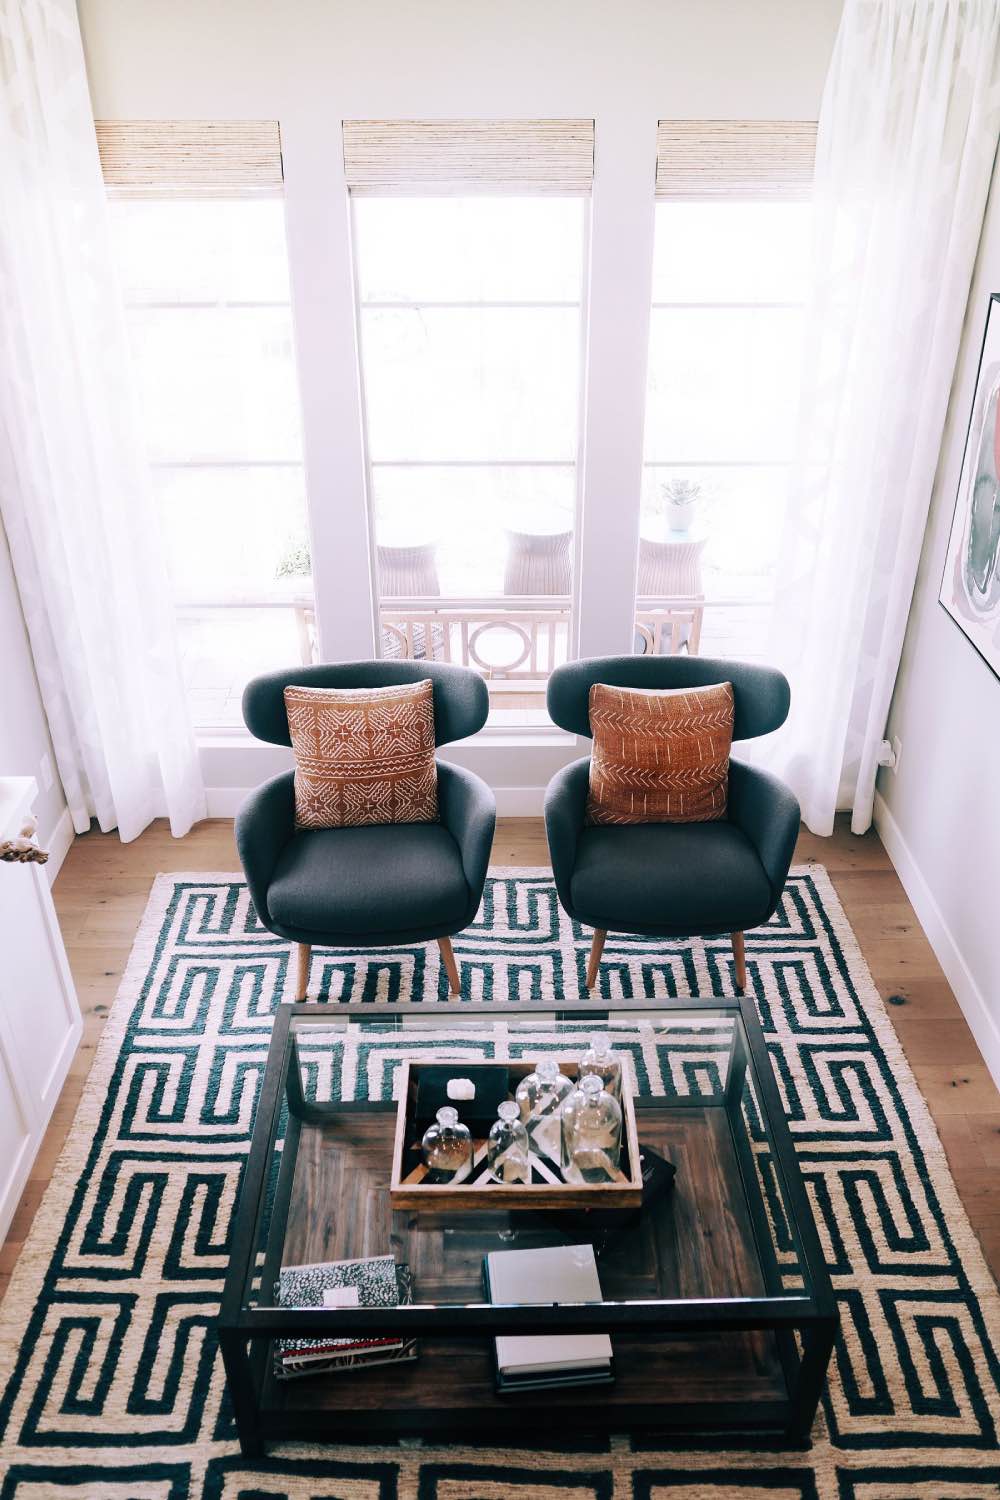 Sala de estar con tonos neutros y estampados, alfombra estampada blanca y negra